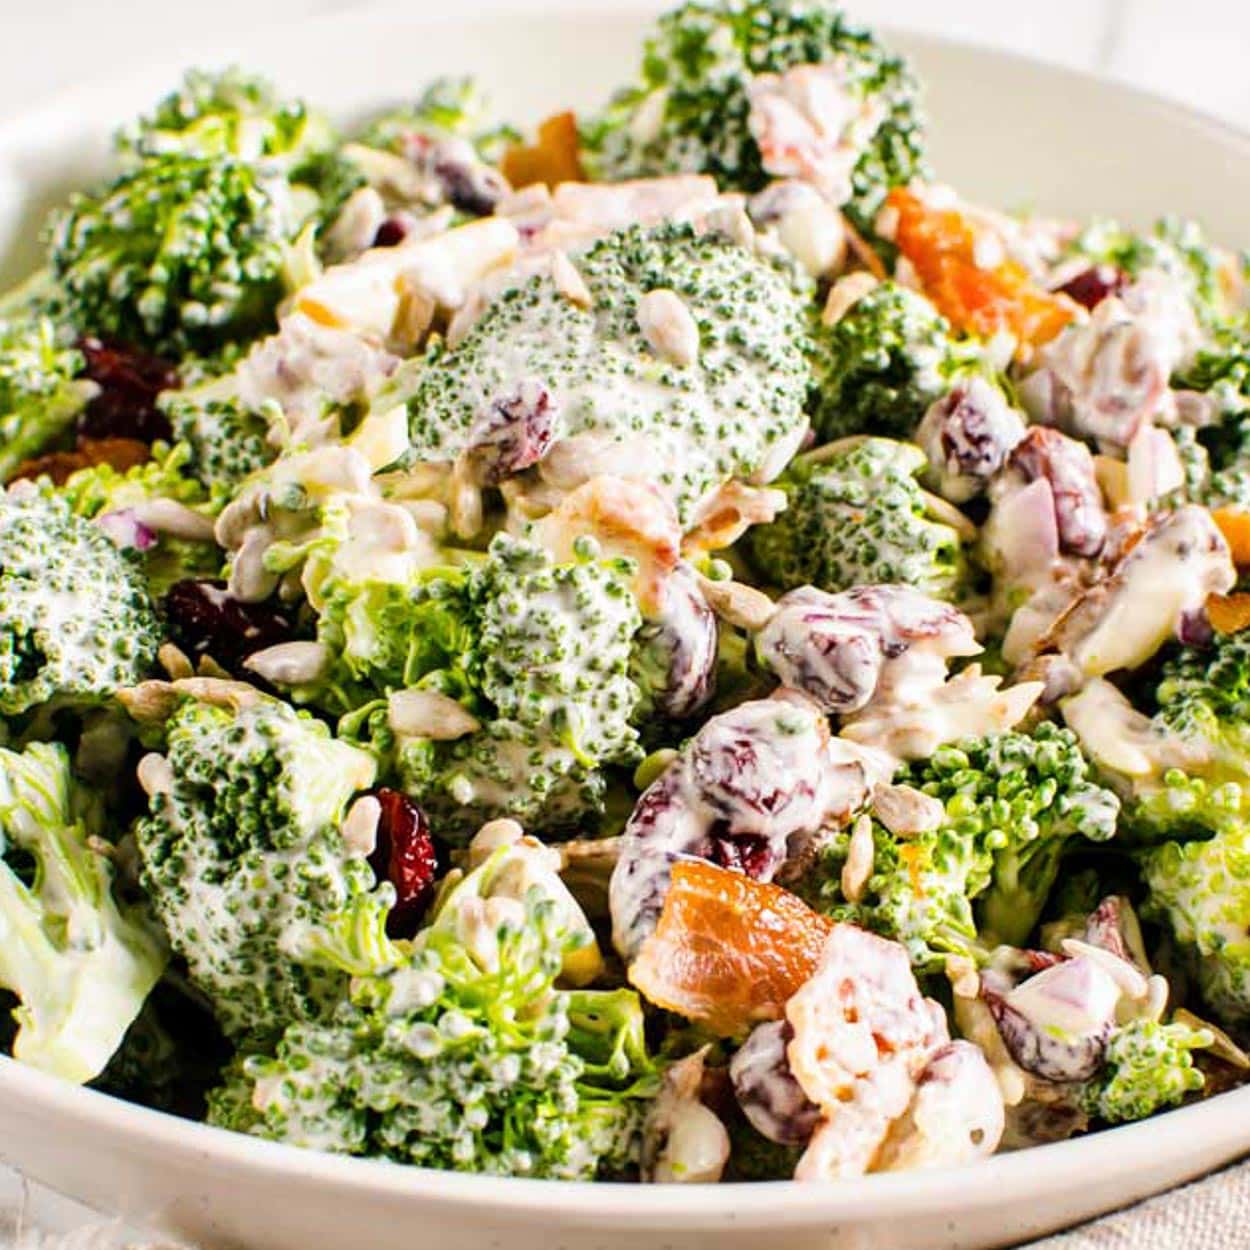 Healthy Broccoli Salad With Greek Yogurt Dressing - iFoodReal